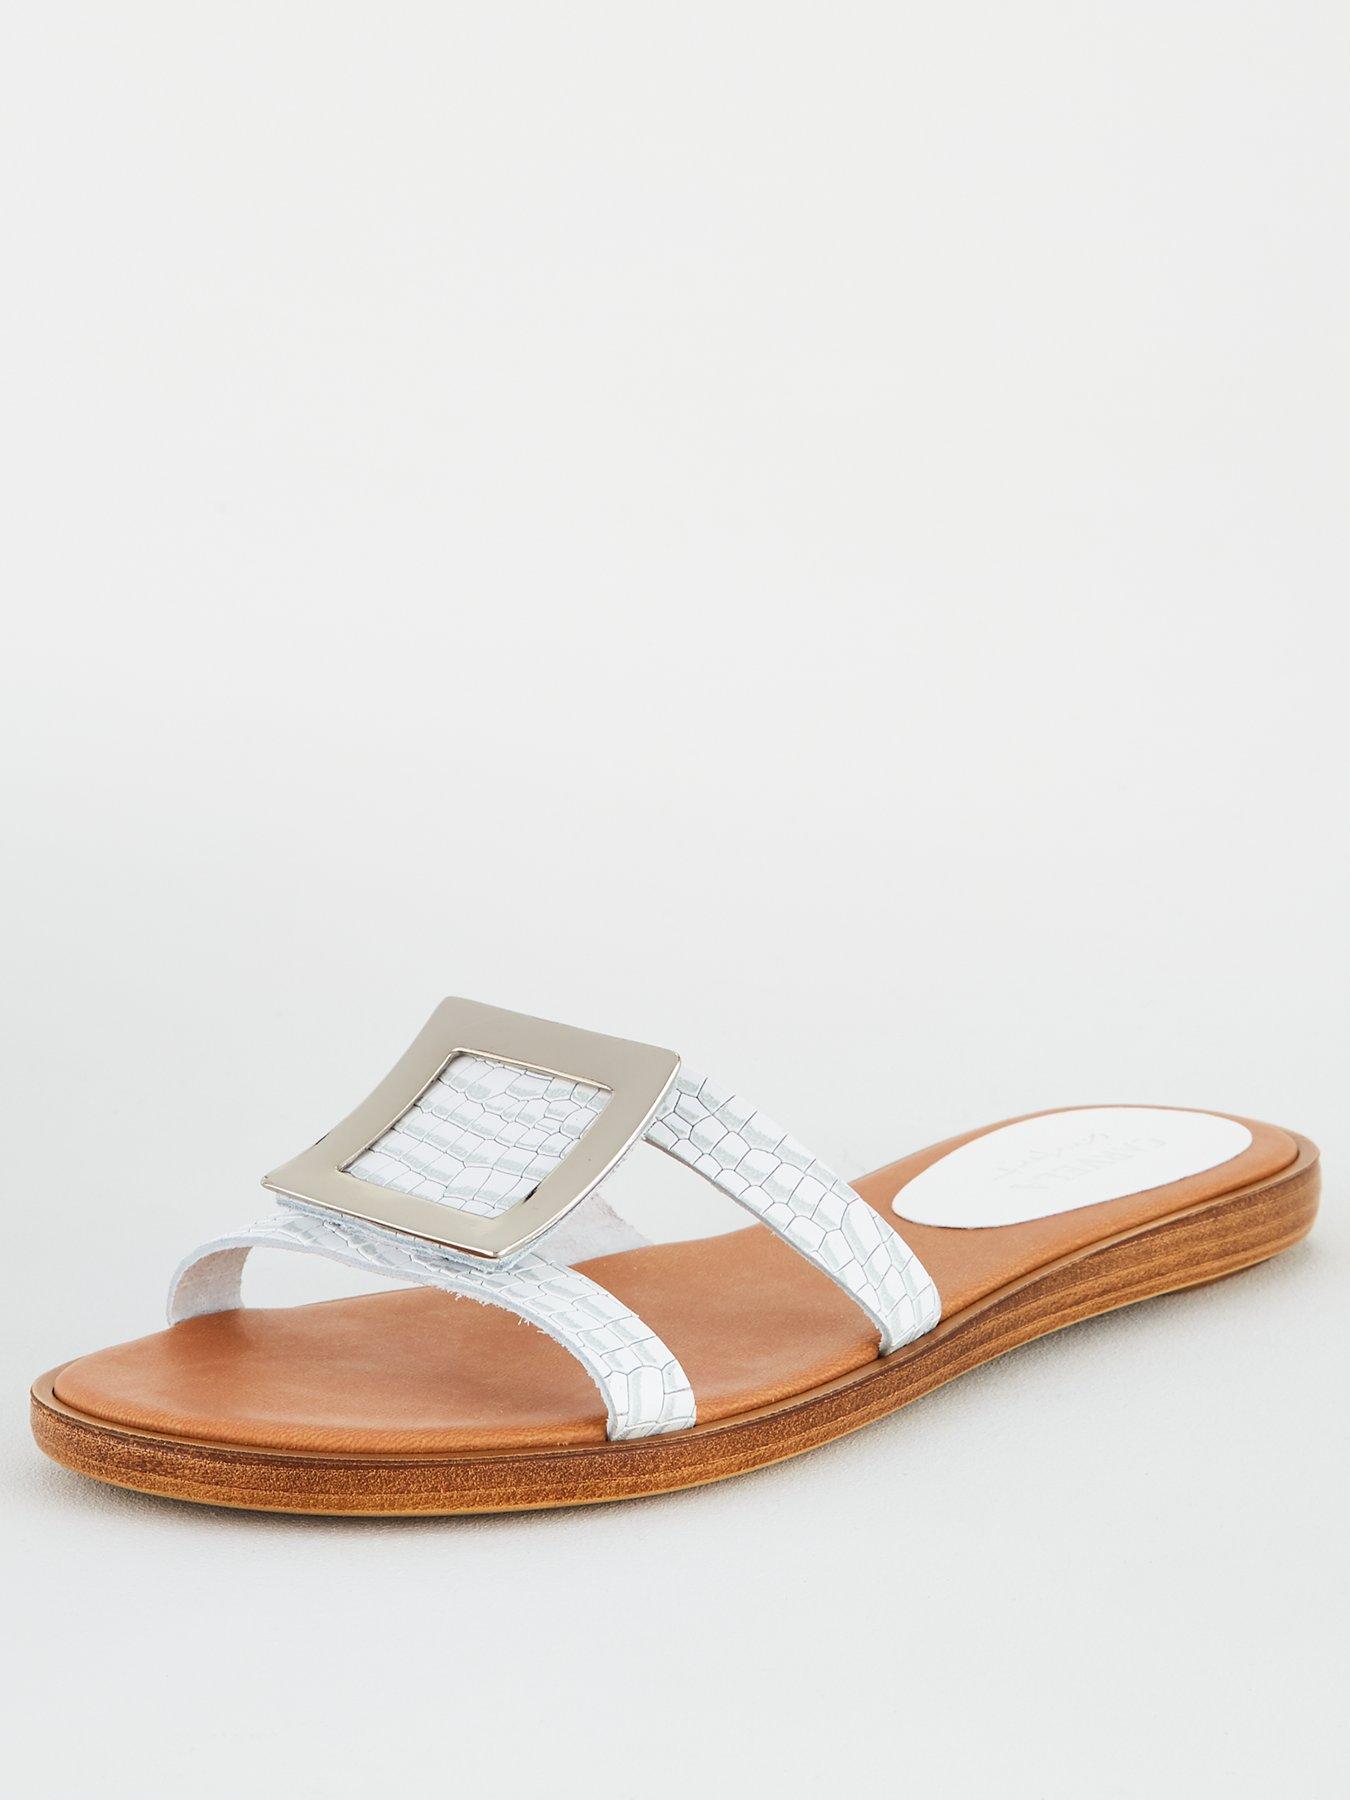 carvela white sandals